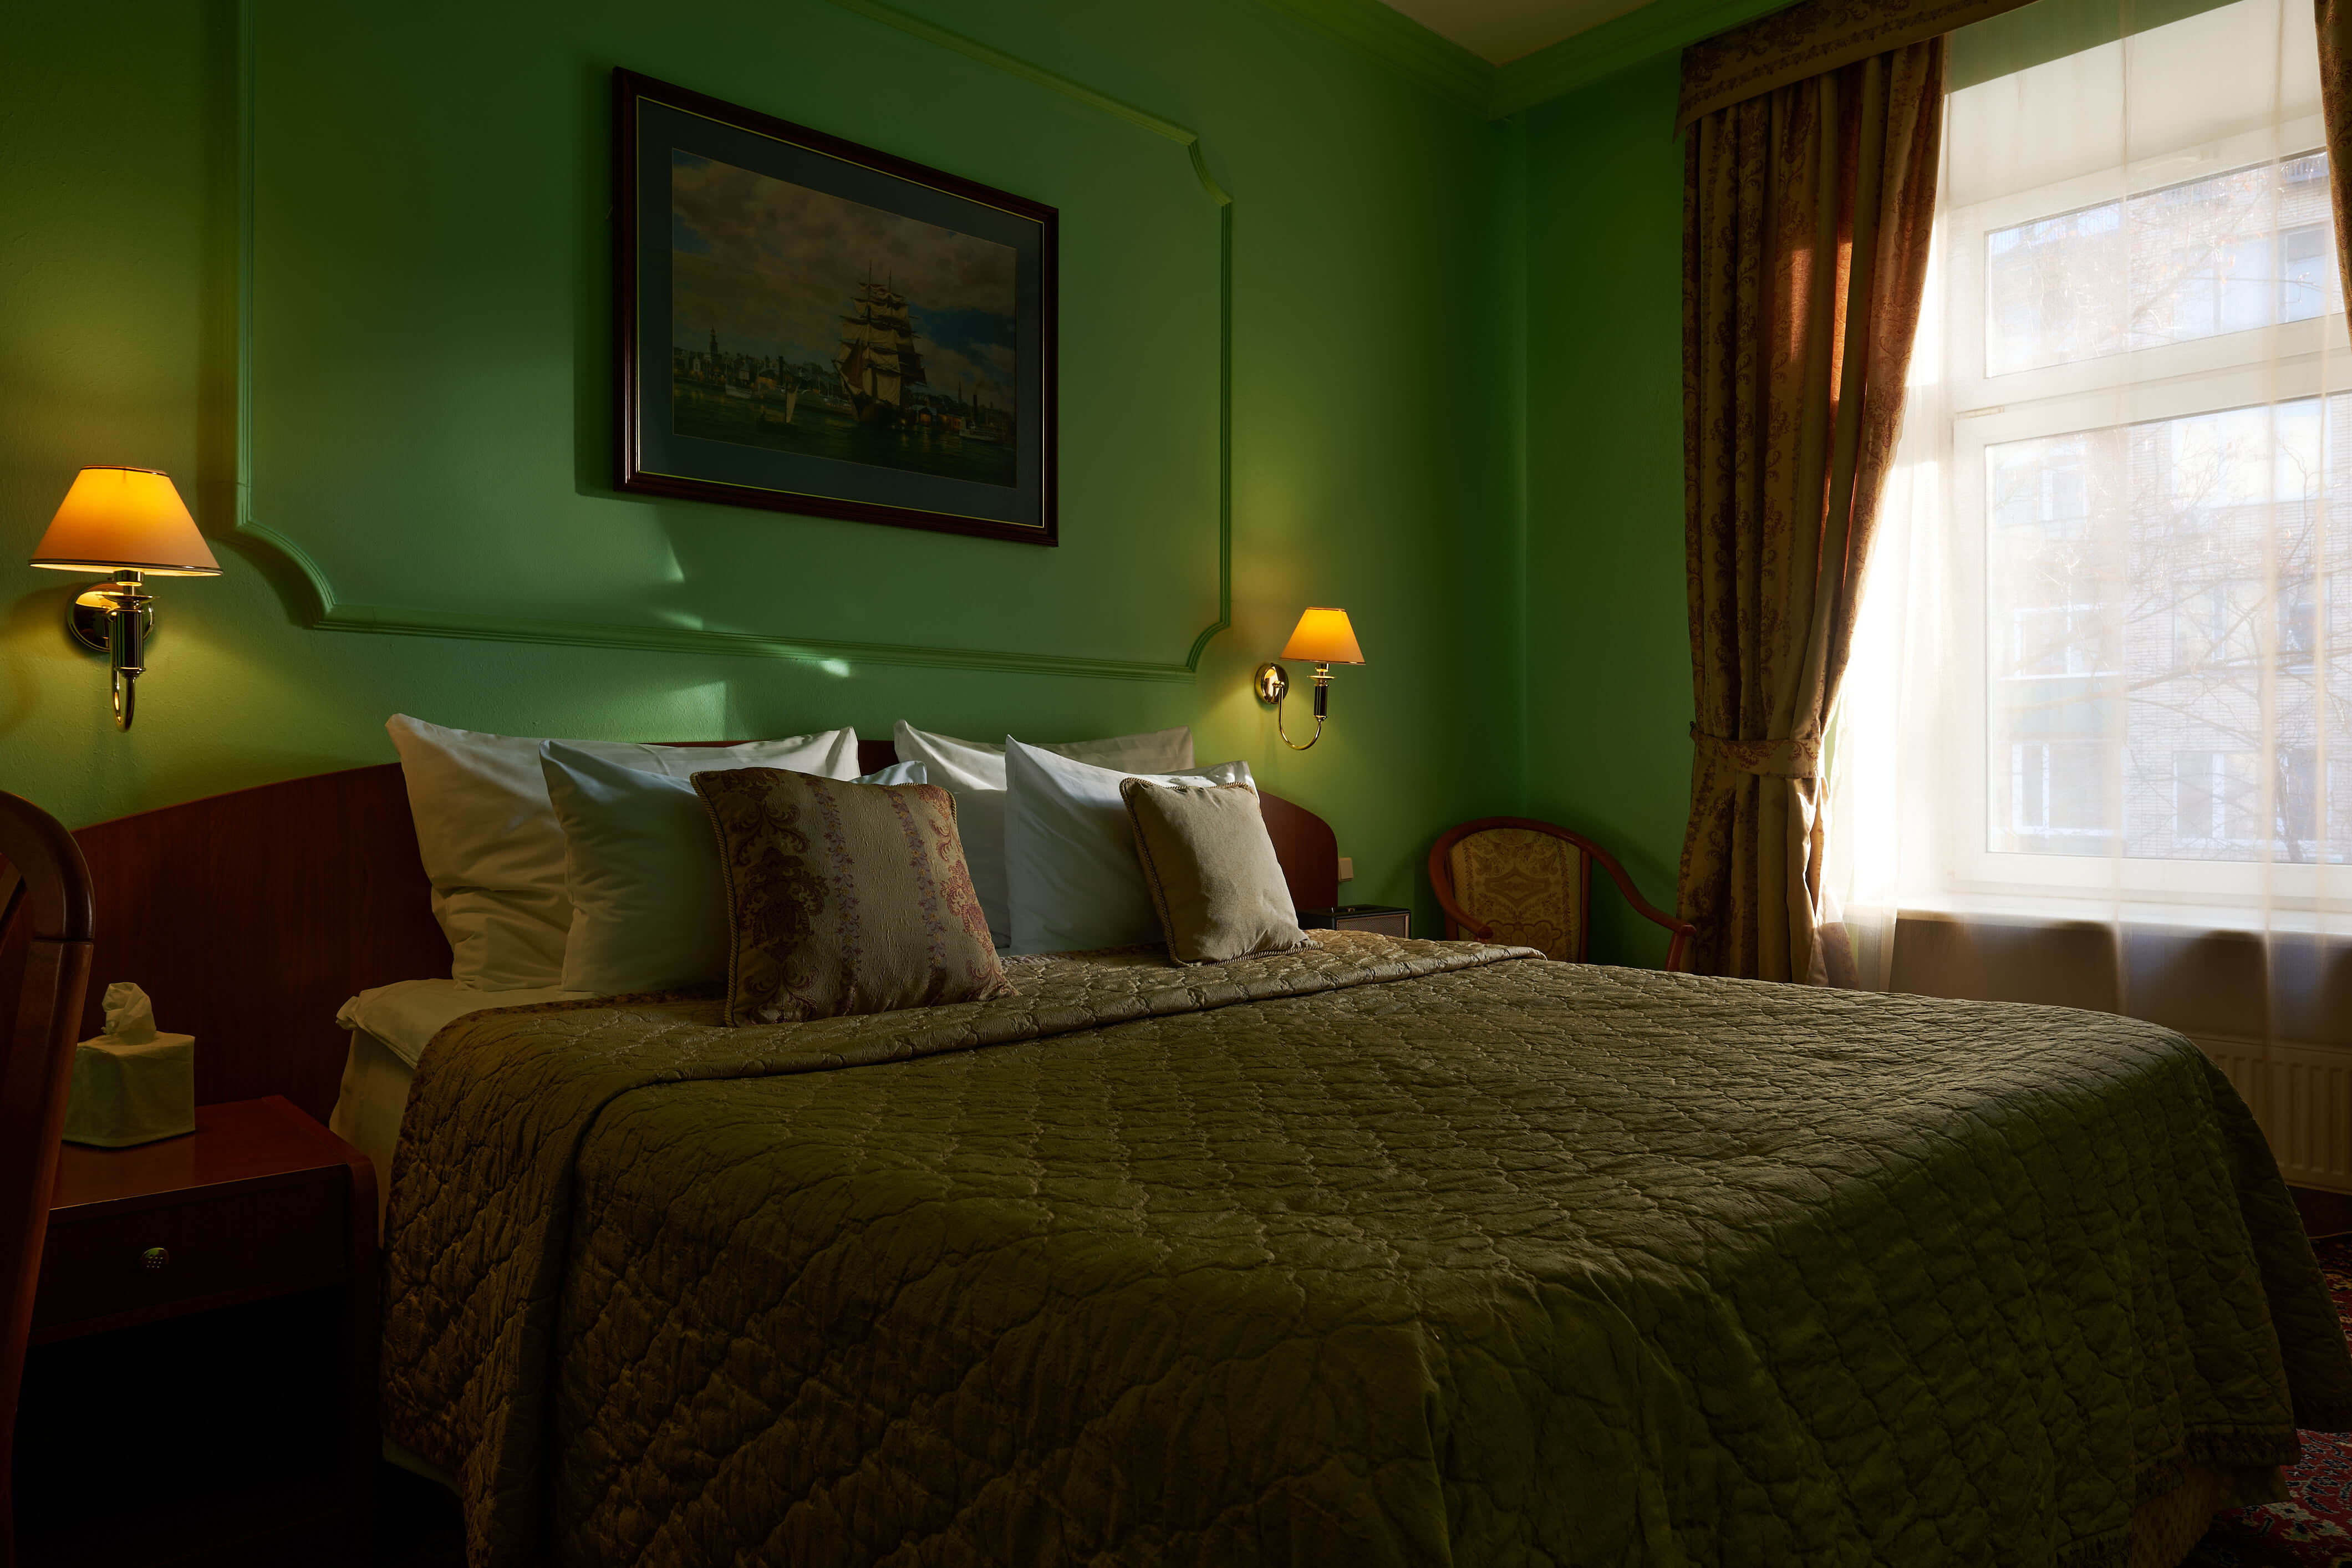 Отель «Марко Поло». Спальное место: приятный свет, большая кровать.